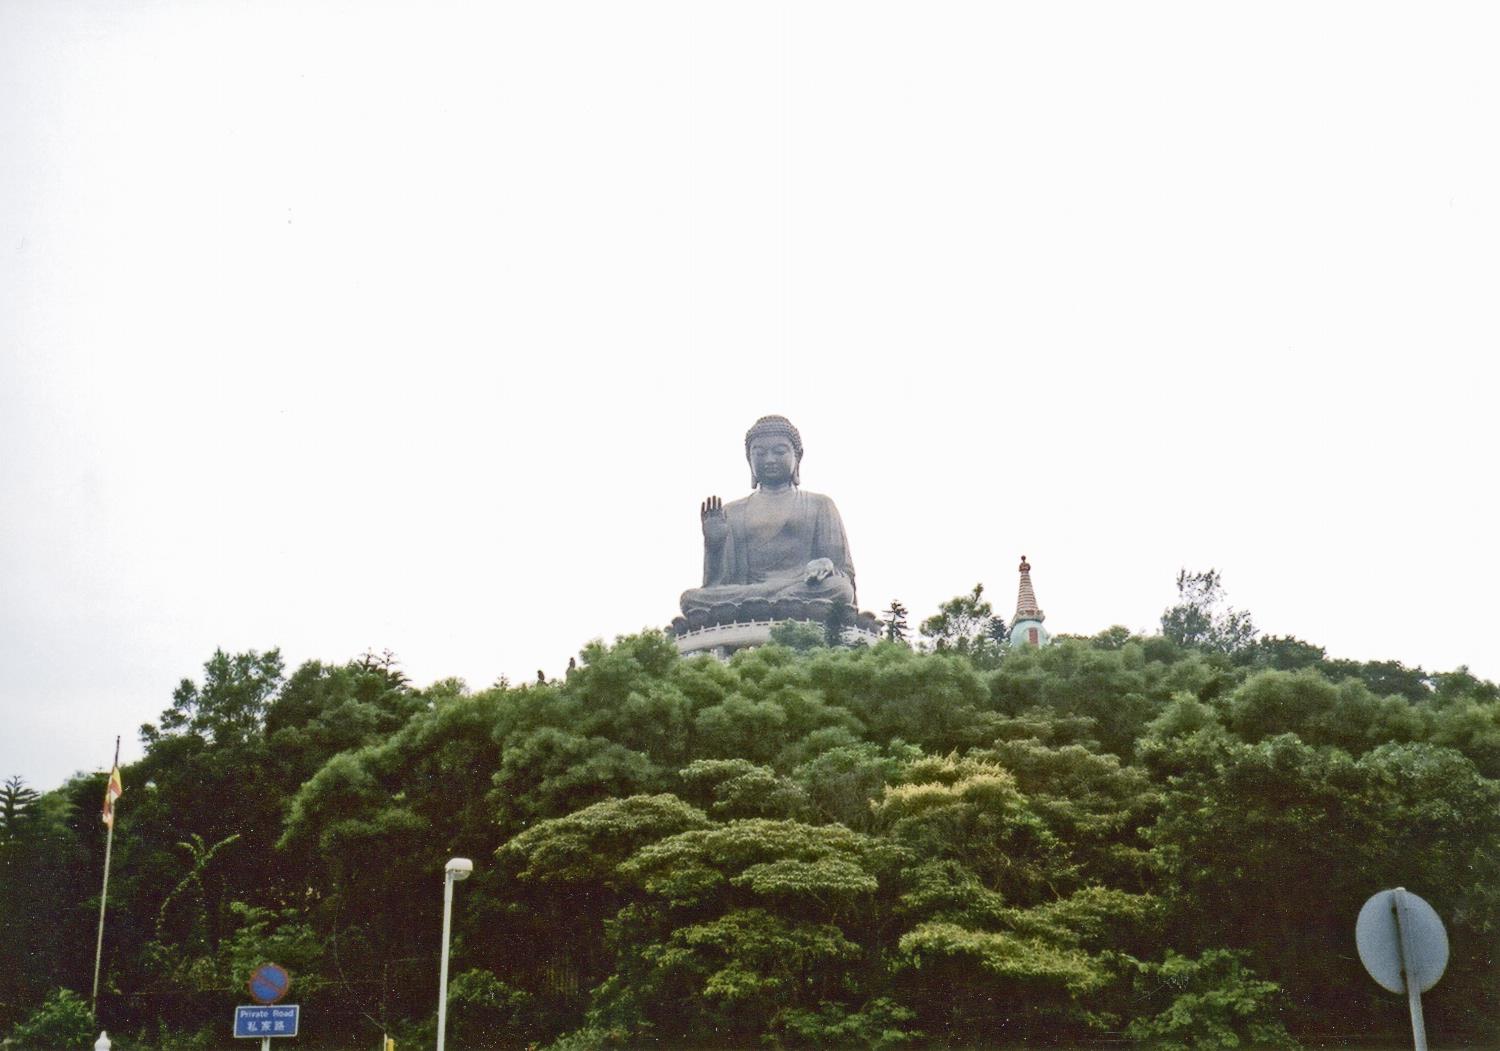 Hong Kong, Lantau Island, The Tian Tan Great Buddha